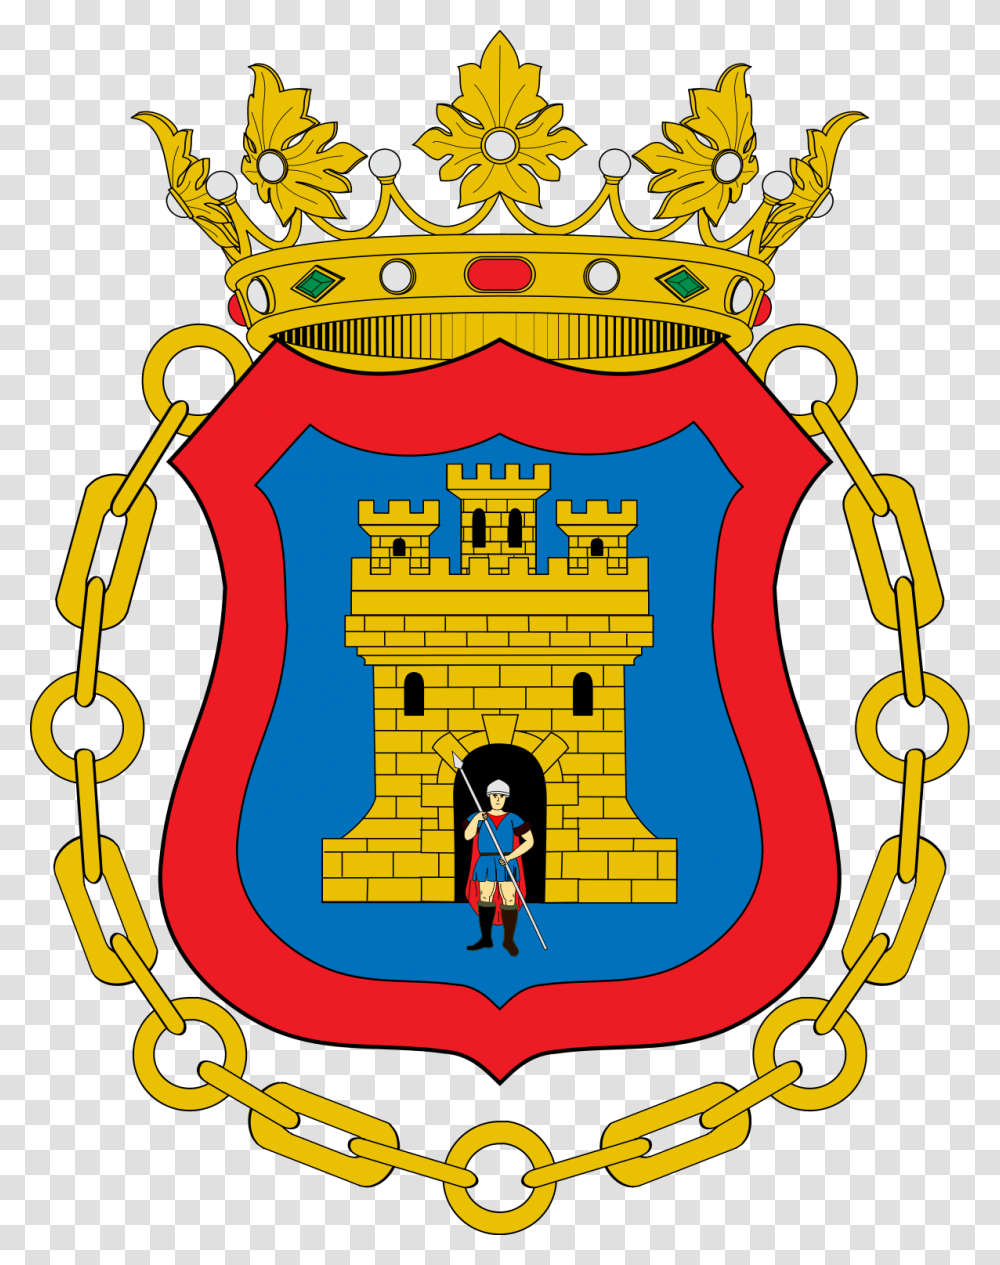 Escudo De Capitania General De Filipinas, Logo, Trademark, Armor Transparent Png